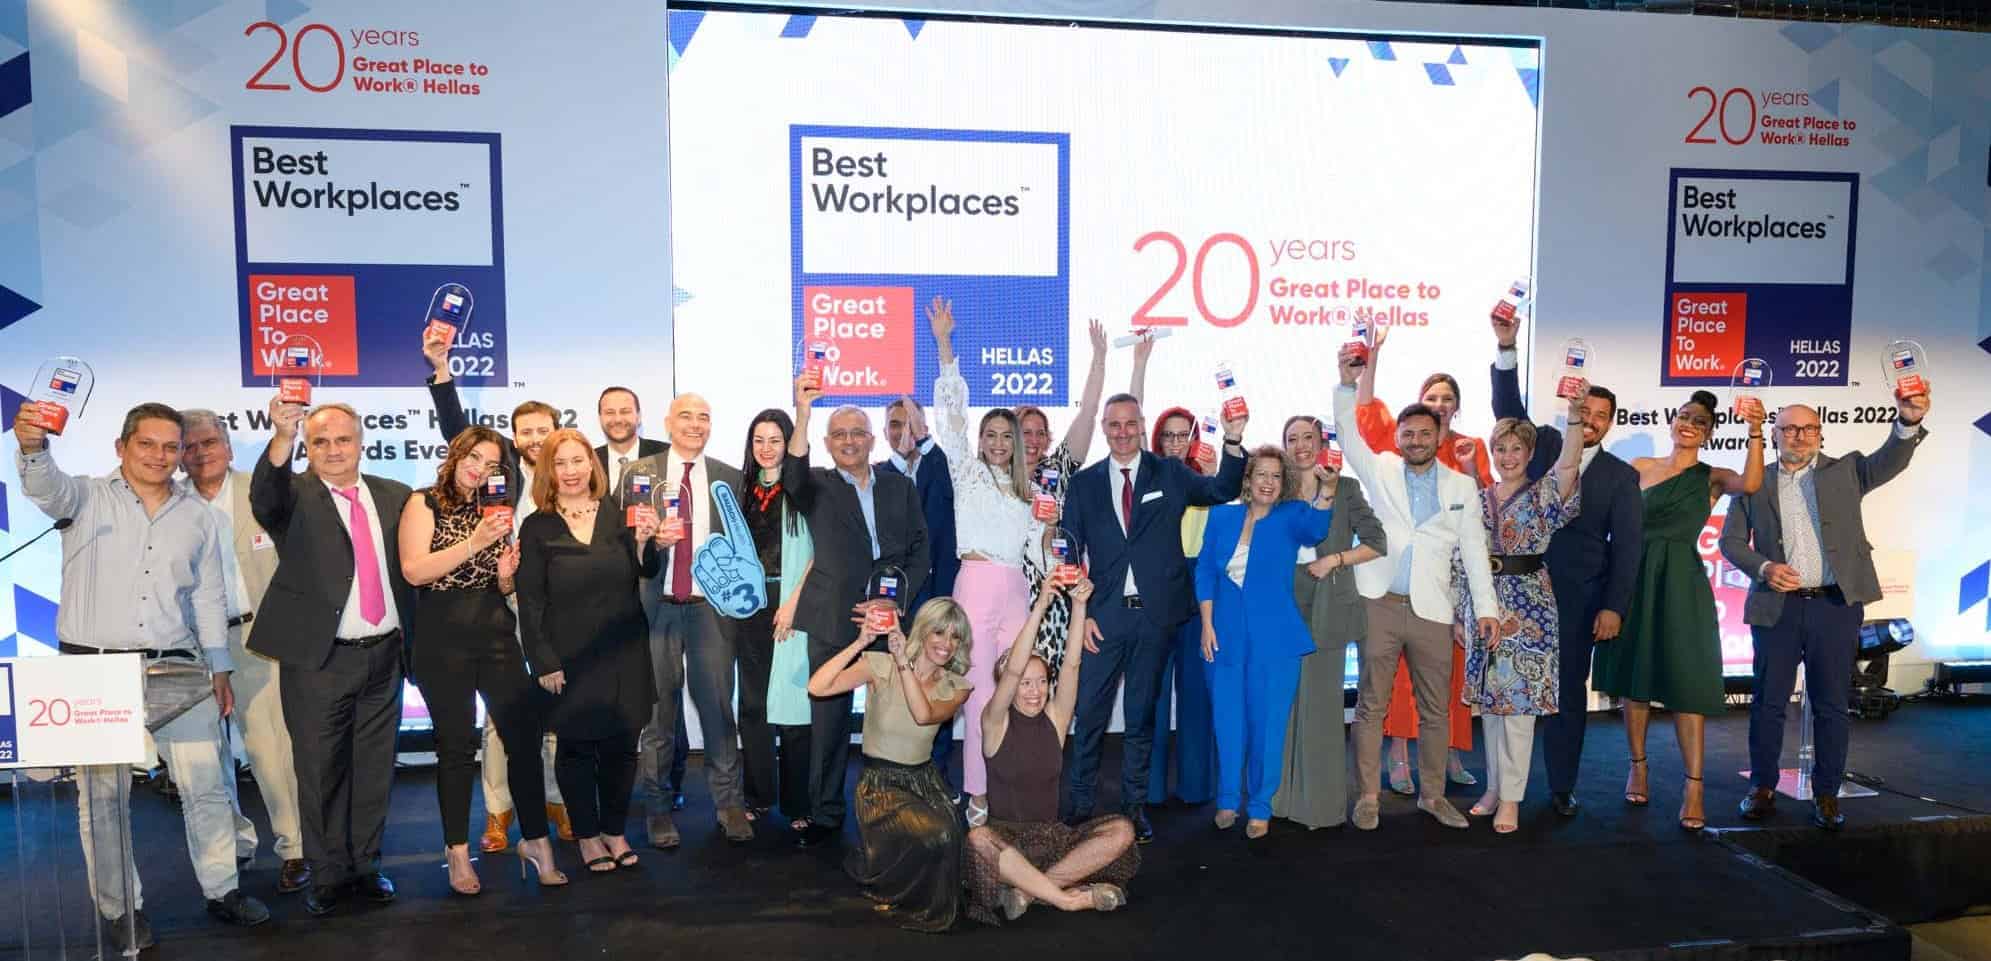 Best Workplaces Hellas 2022